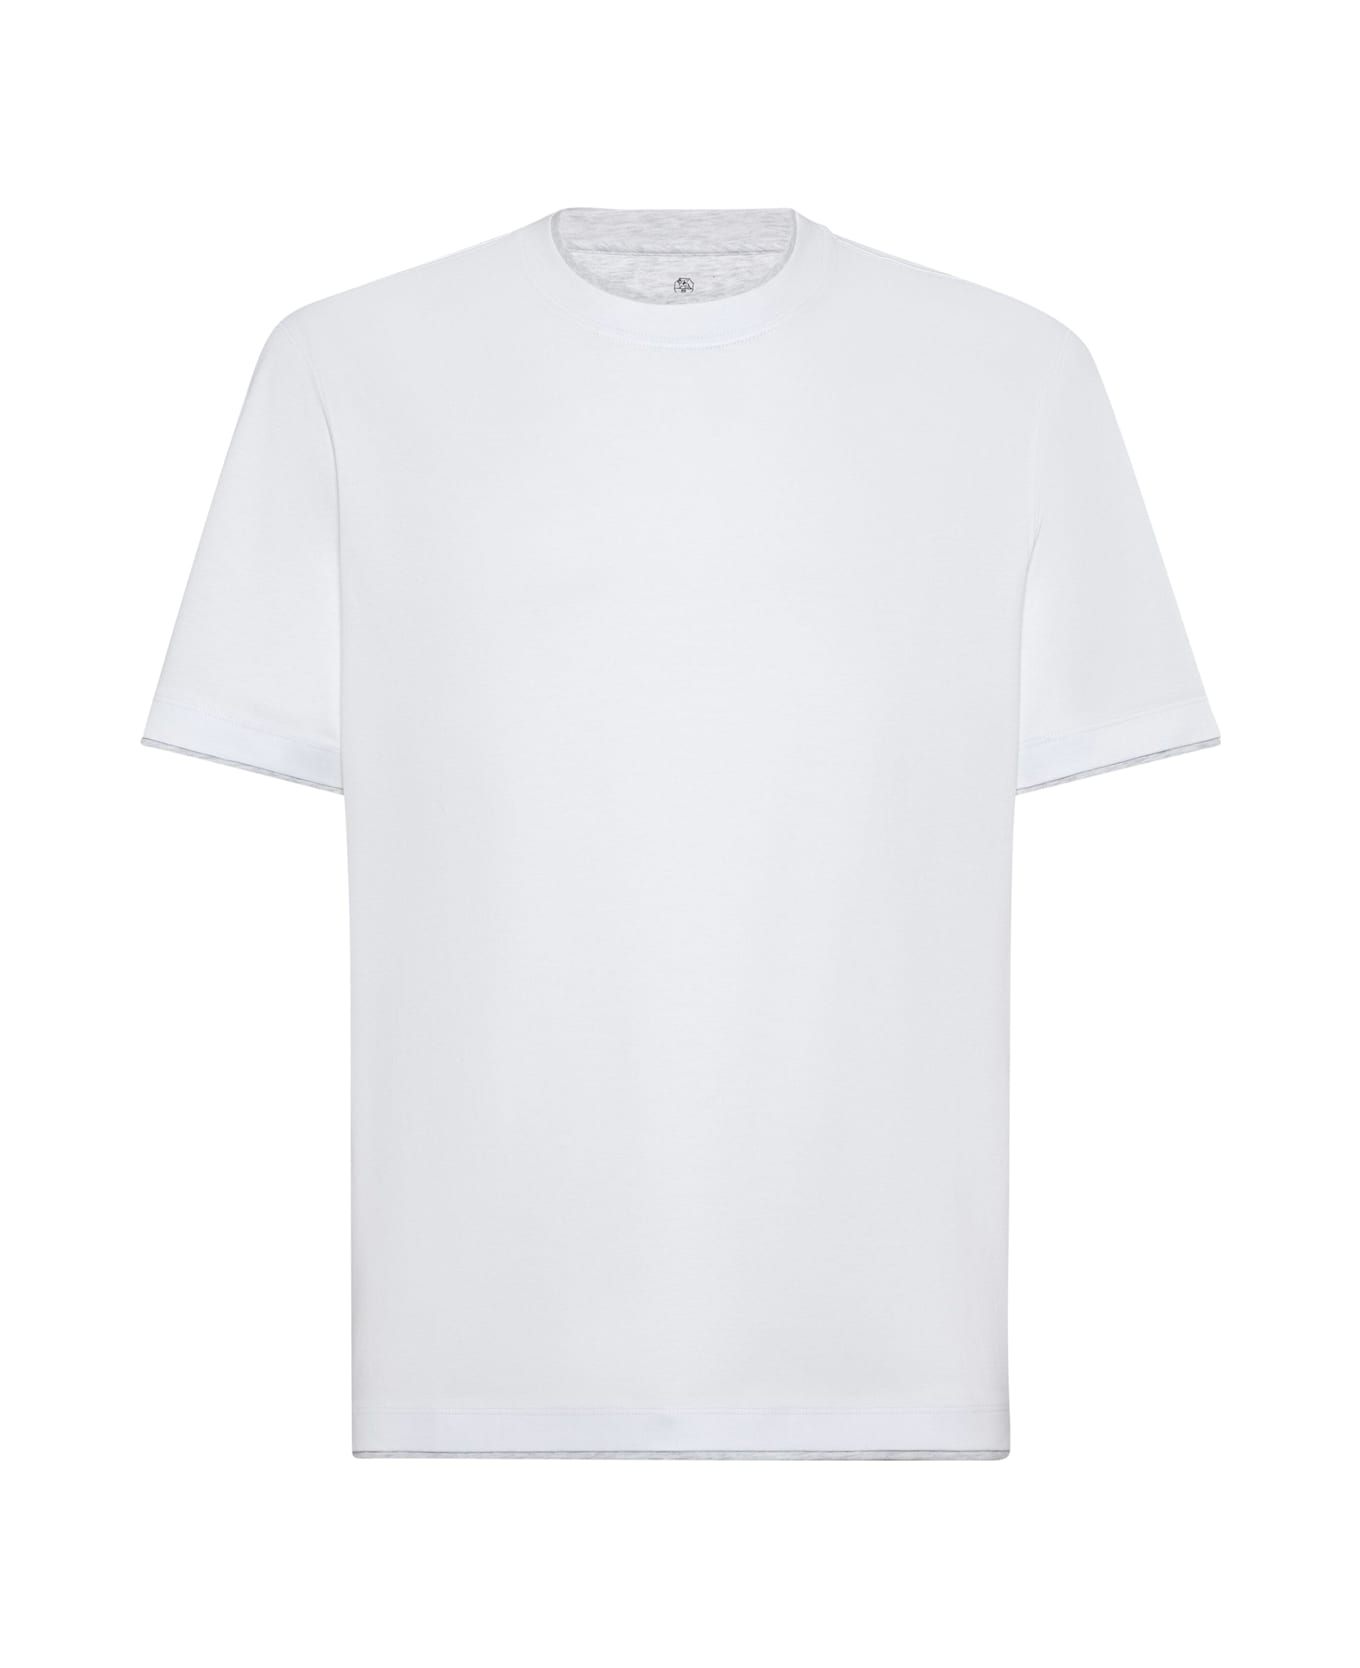 Brunello Cucinelli T-shirt - White Pearl